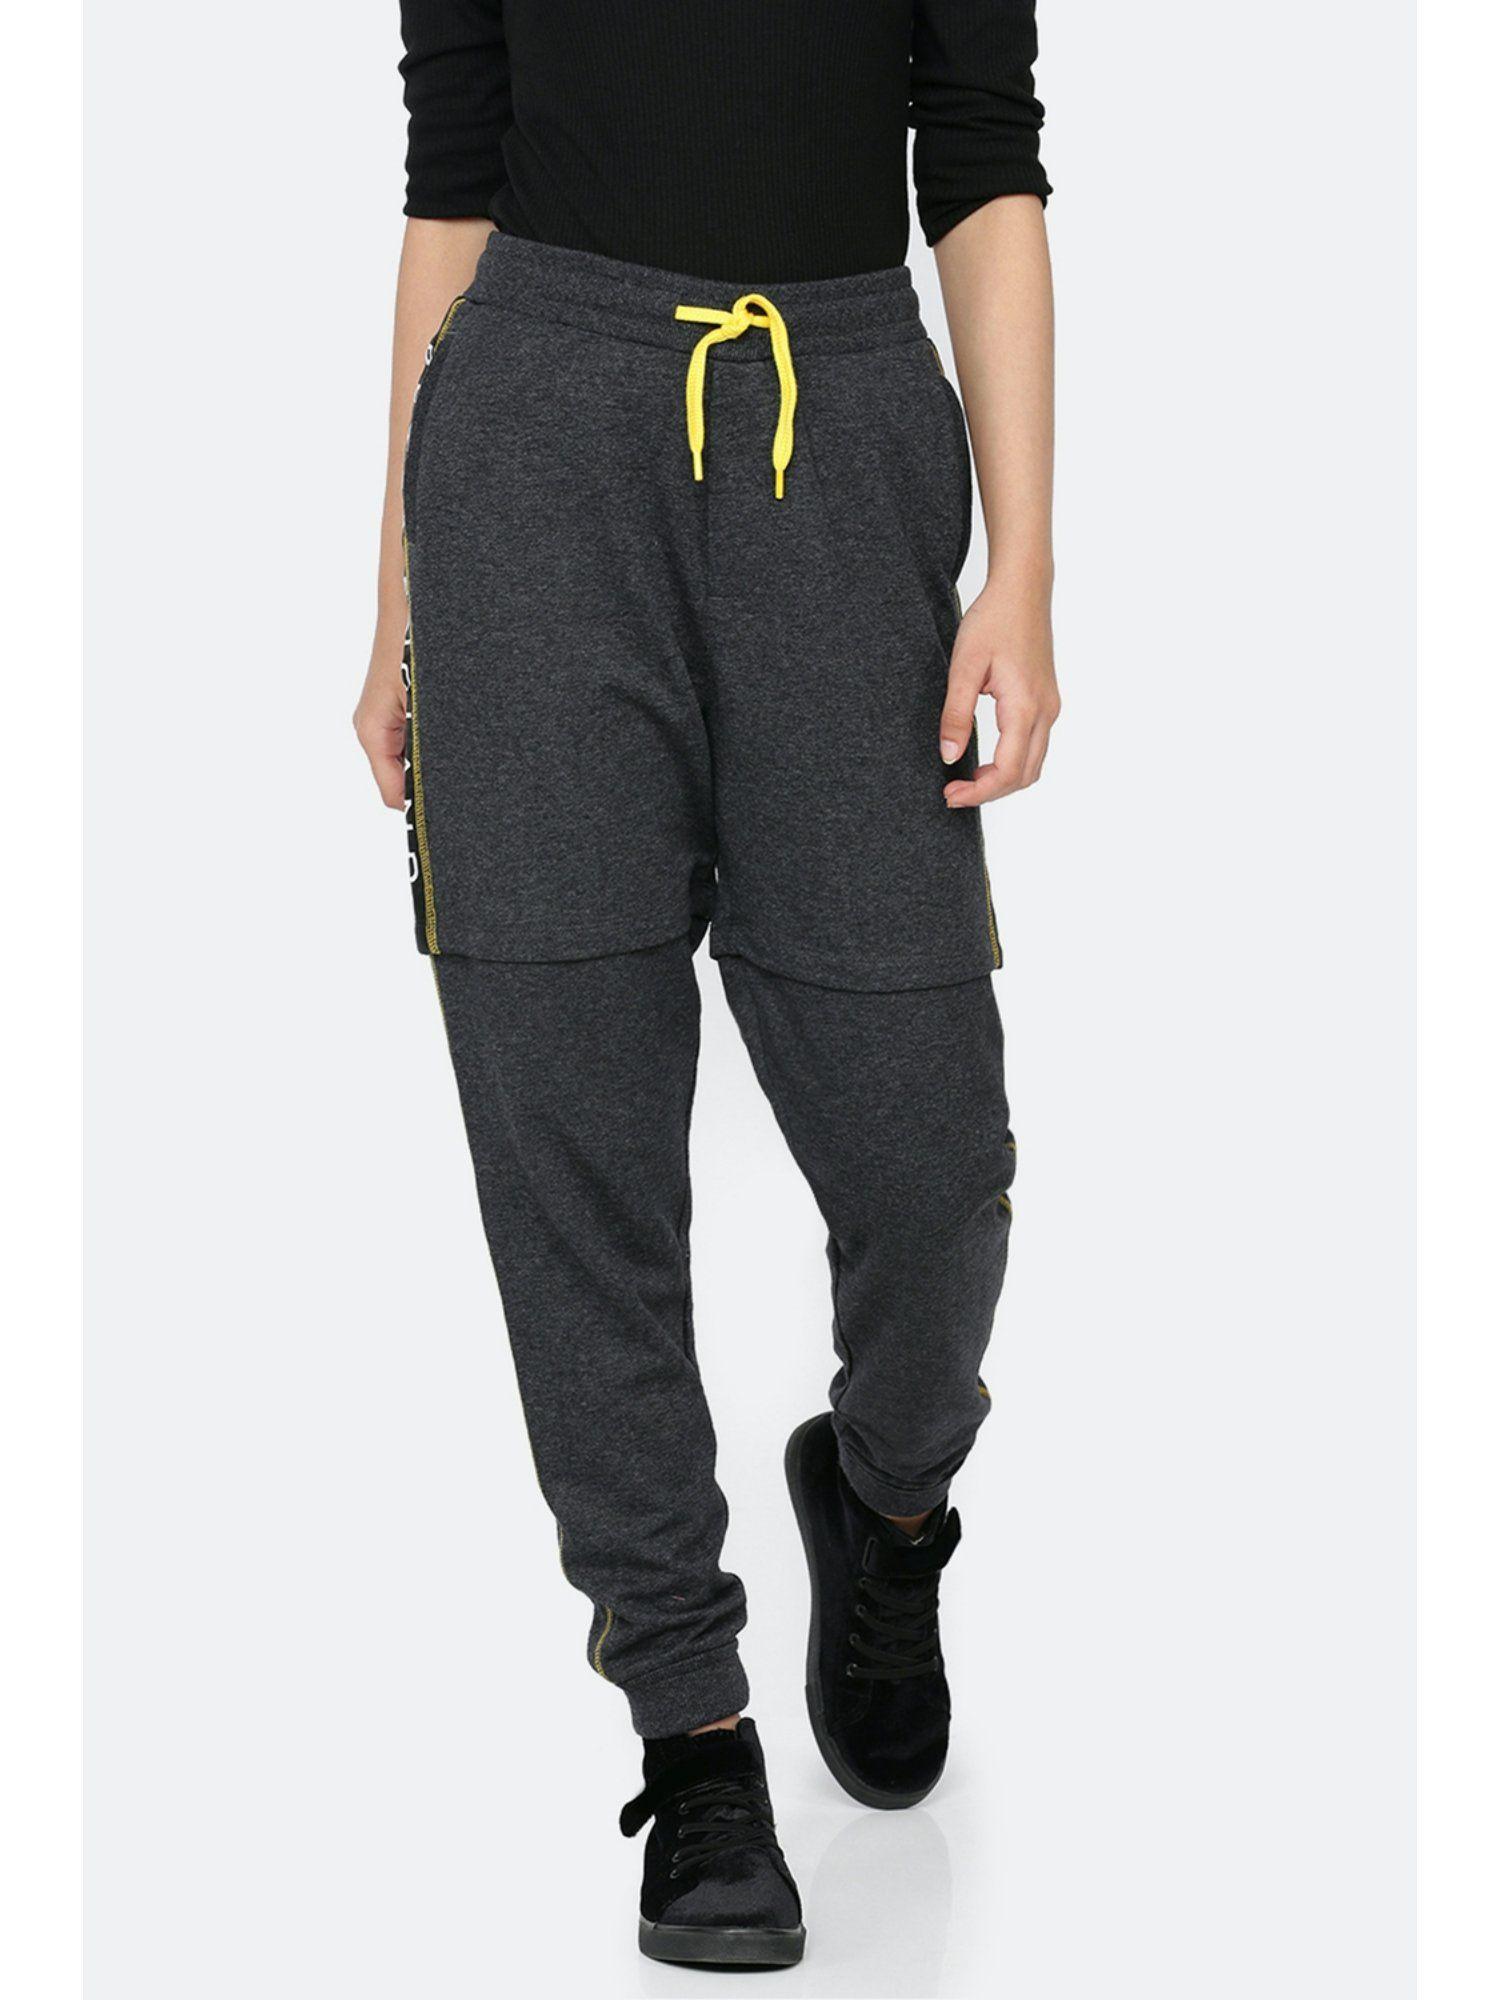 grey-printed-jogger-pants